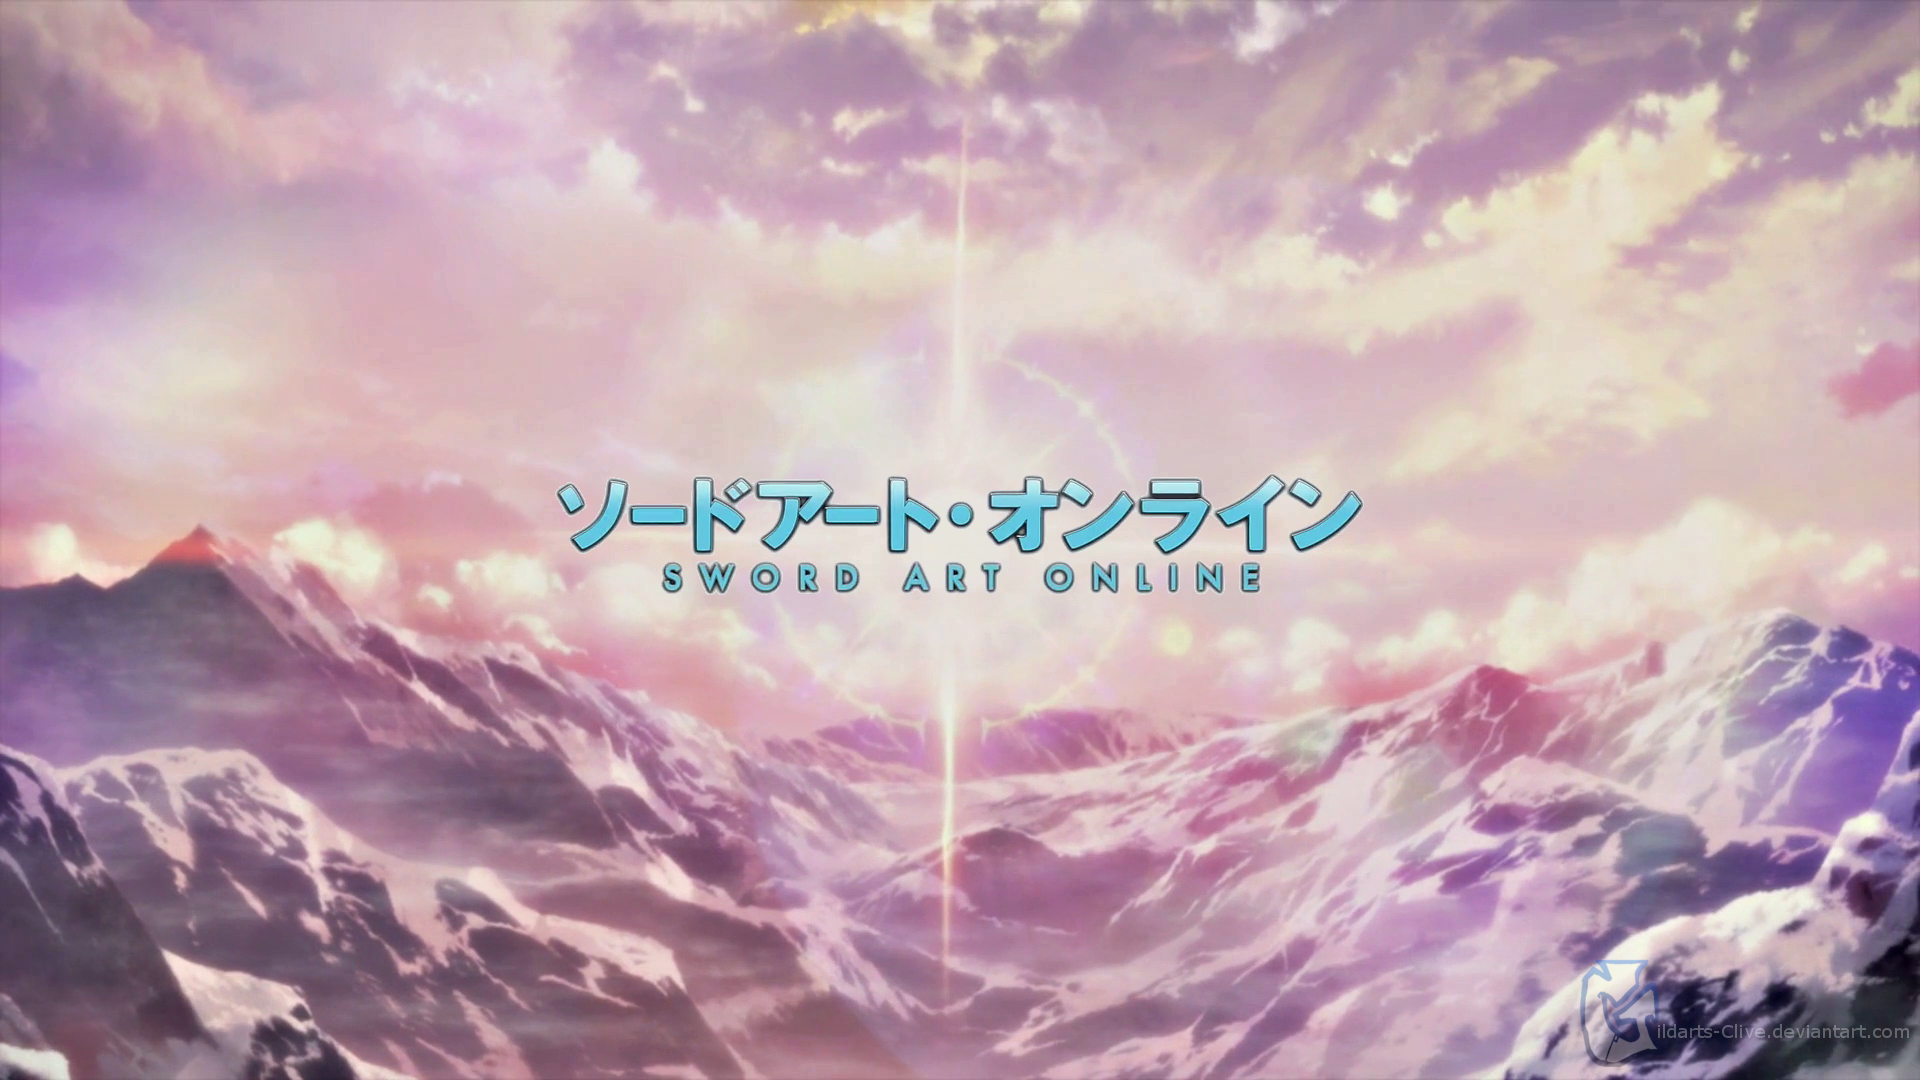 Sword Art Online, Logo, Landscape, Anime, Mountain Wallpapers HD